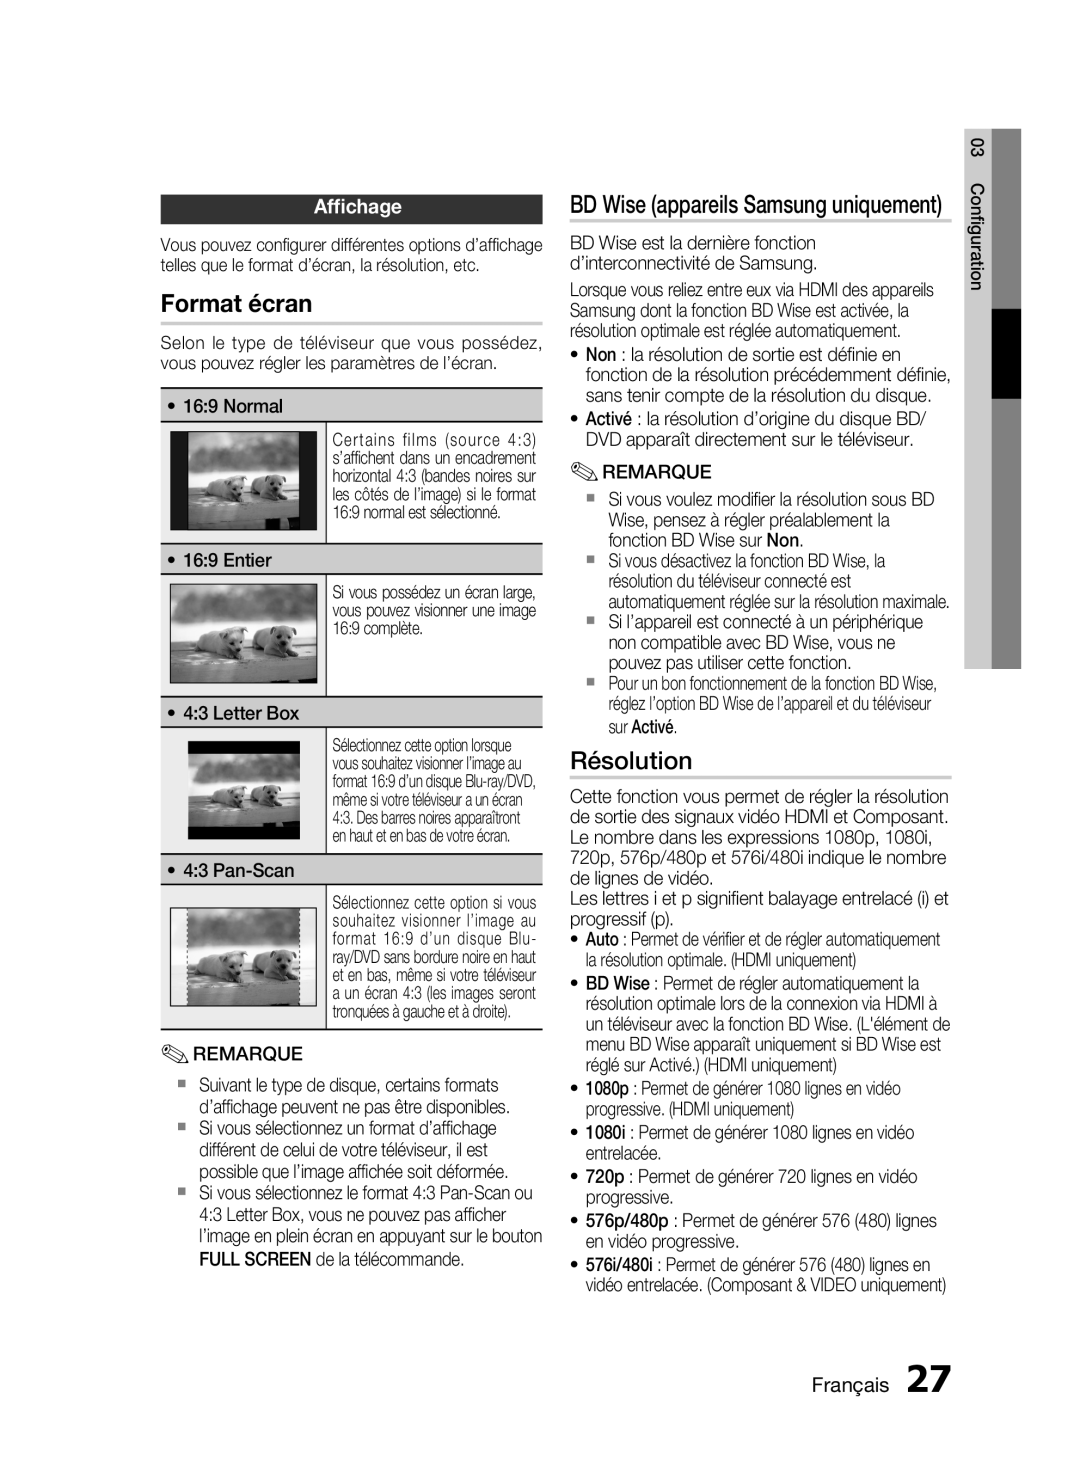 Samsung HT-C6200/XEF manual Format écran, Résolution, Afﬁchage, Français 